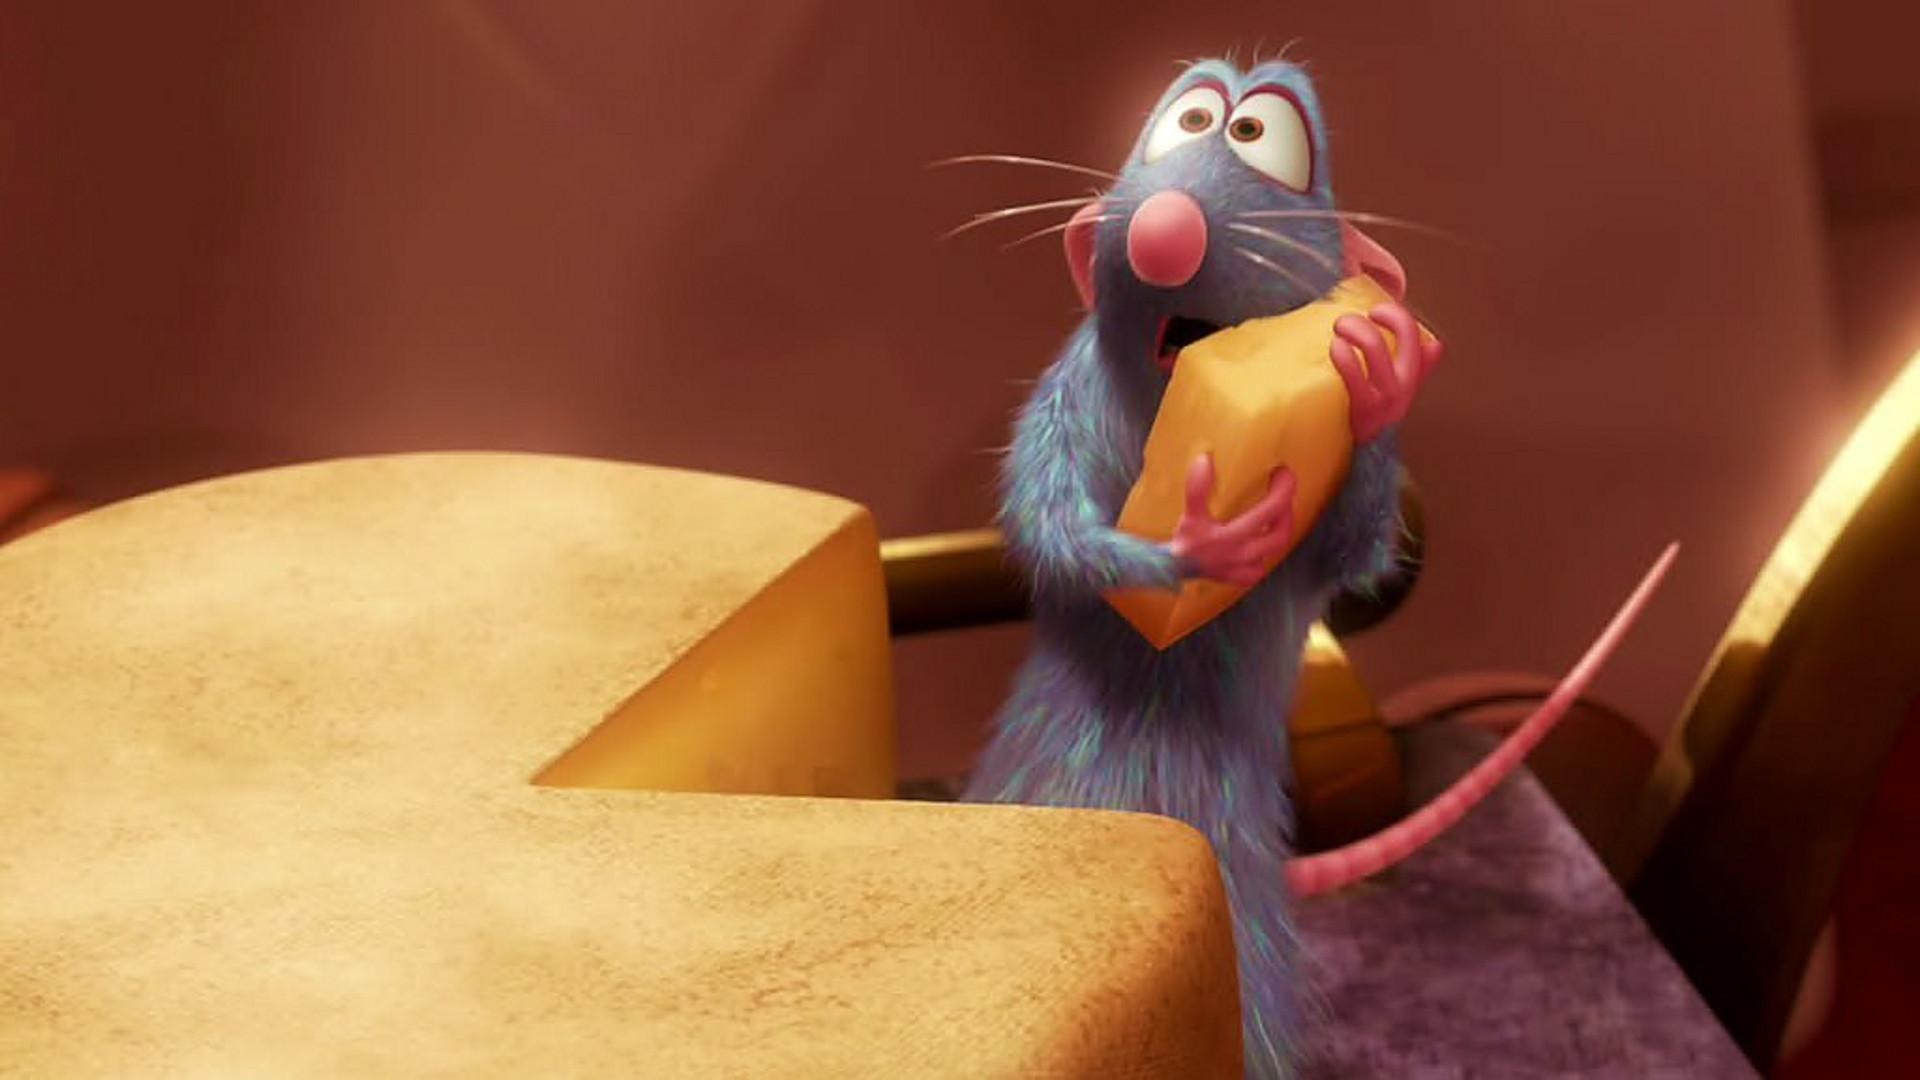 Operação Ratatouille prendeu empresário suspeito de subornar empresas de alimentação (Foto: Reprodução/Pixar)